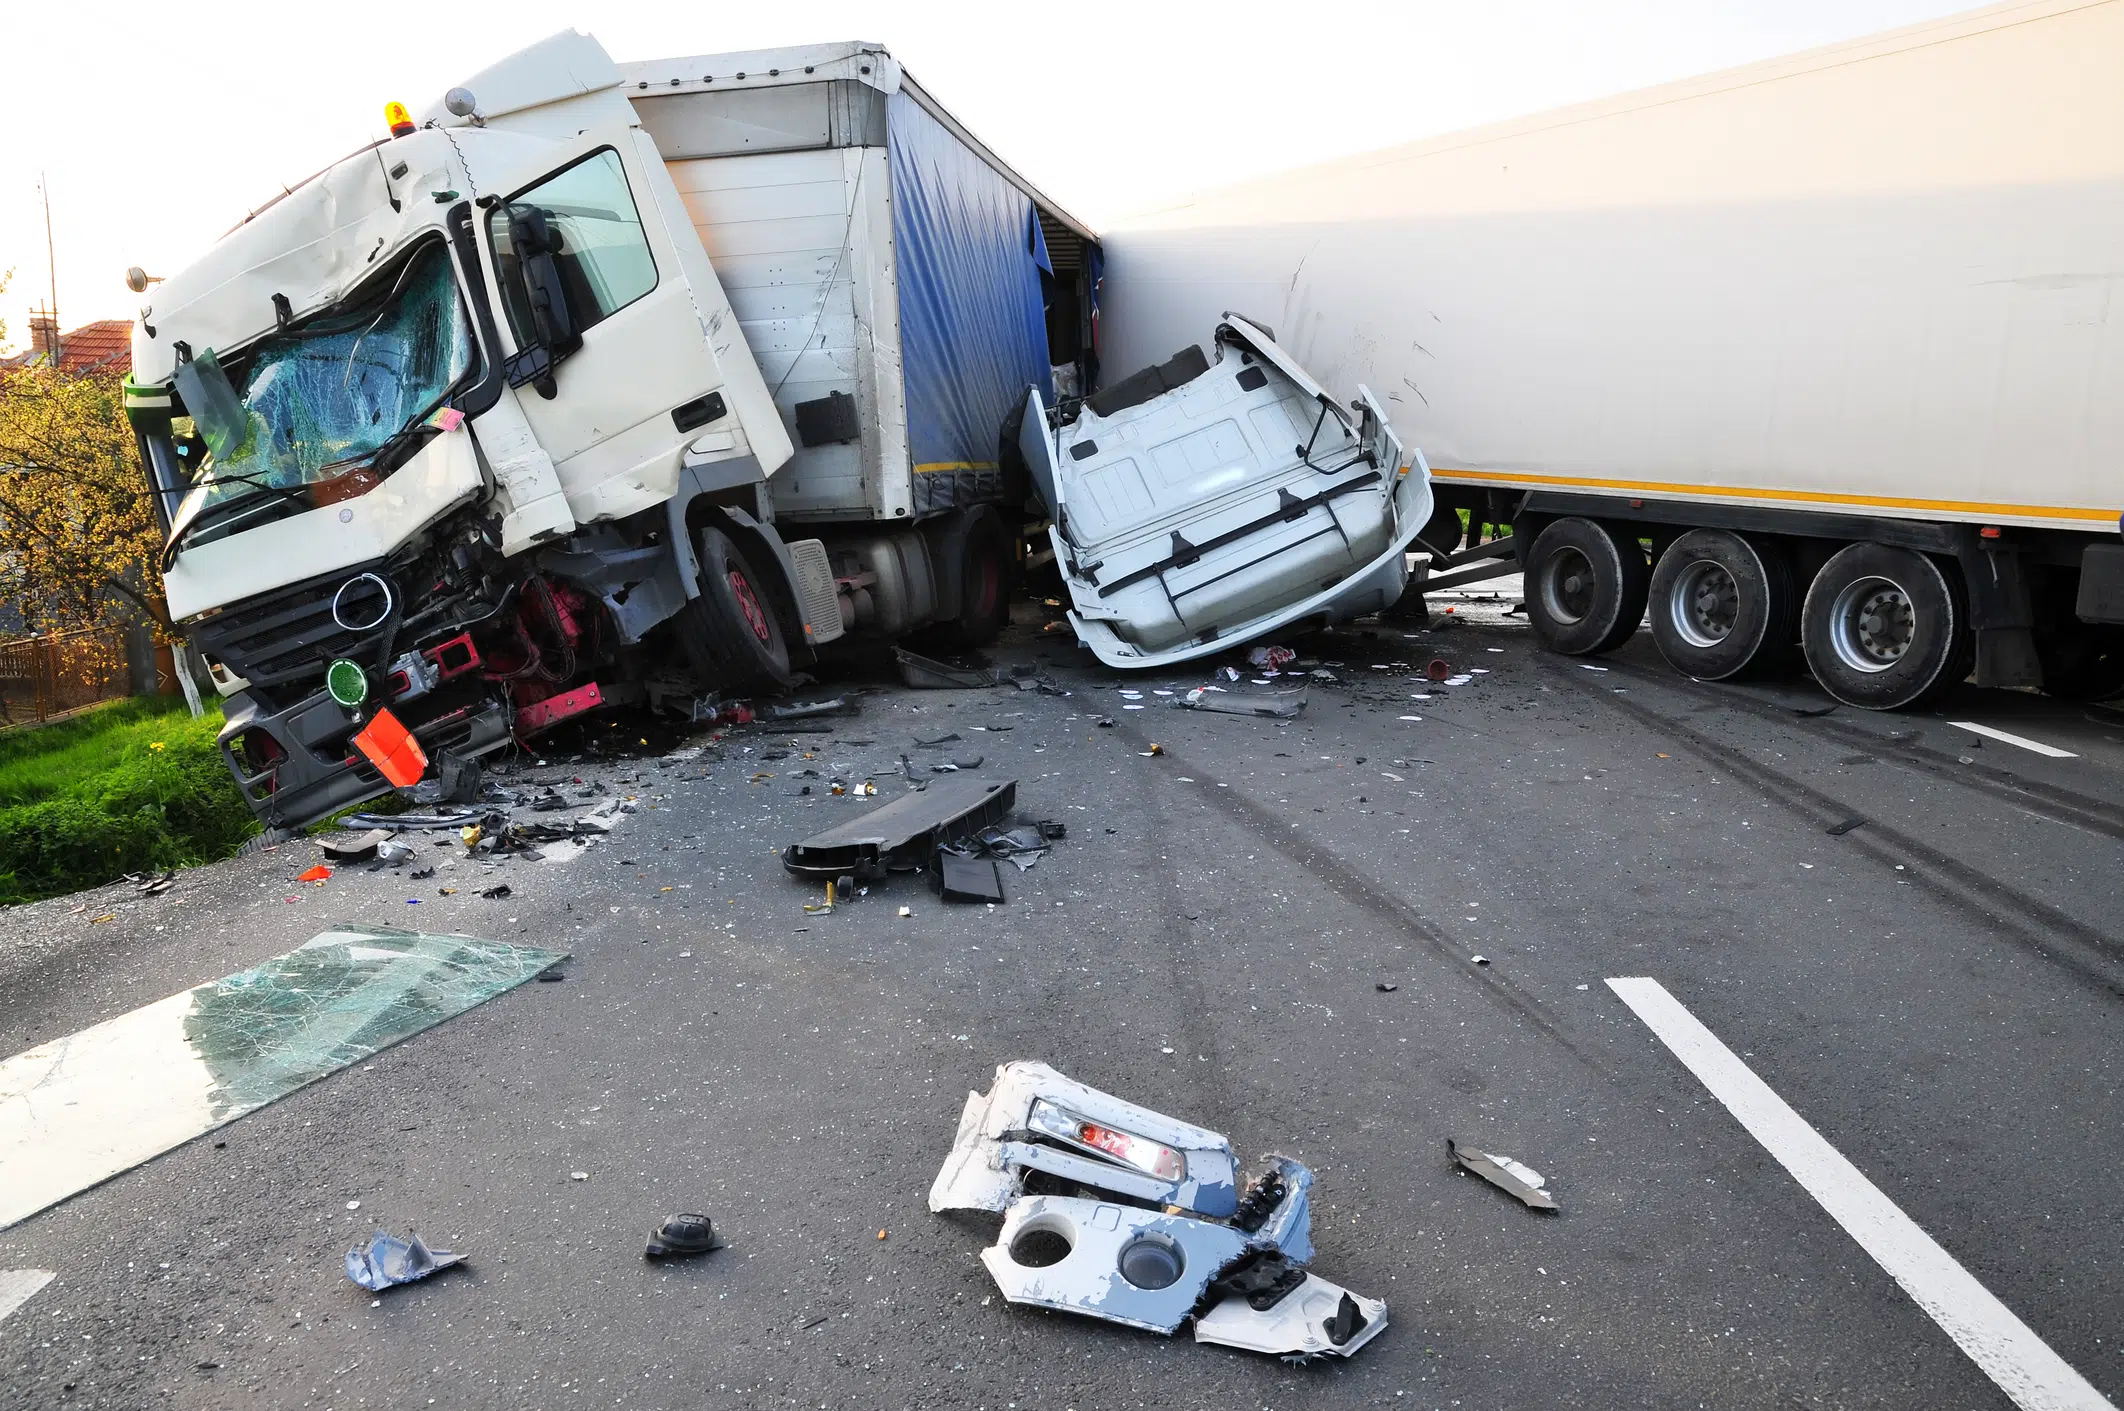 Comment réagir en cas de litige lors dun accident de la route ?